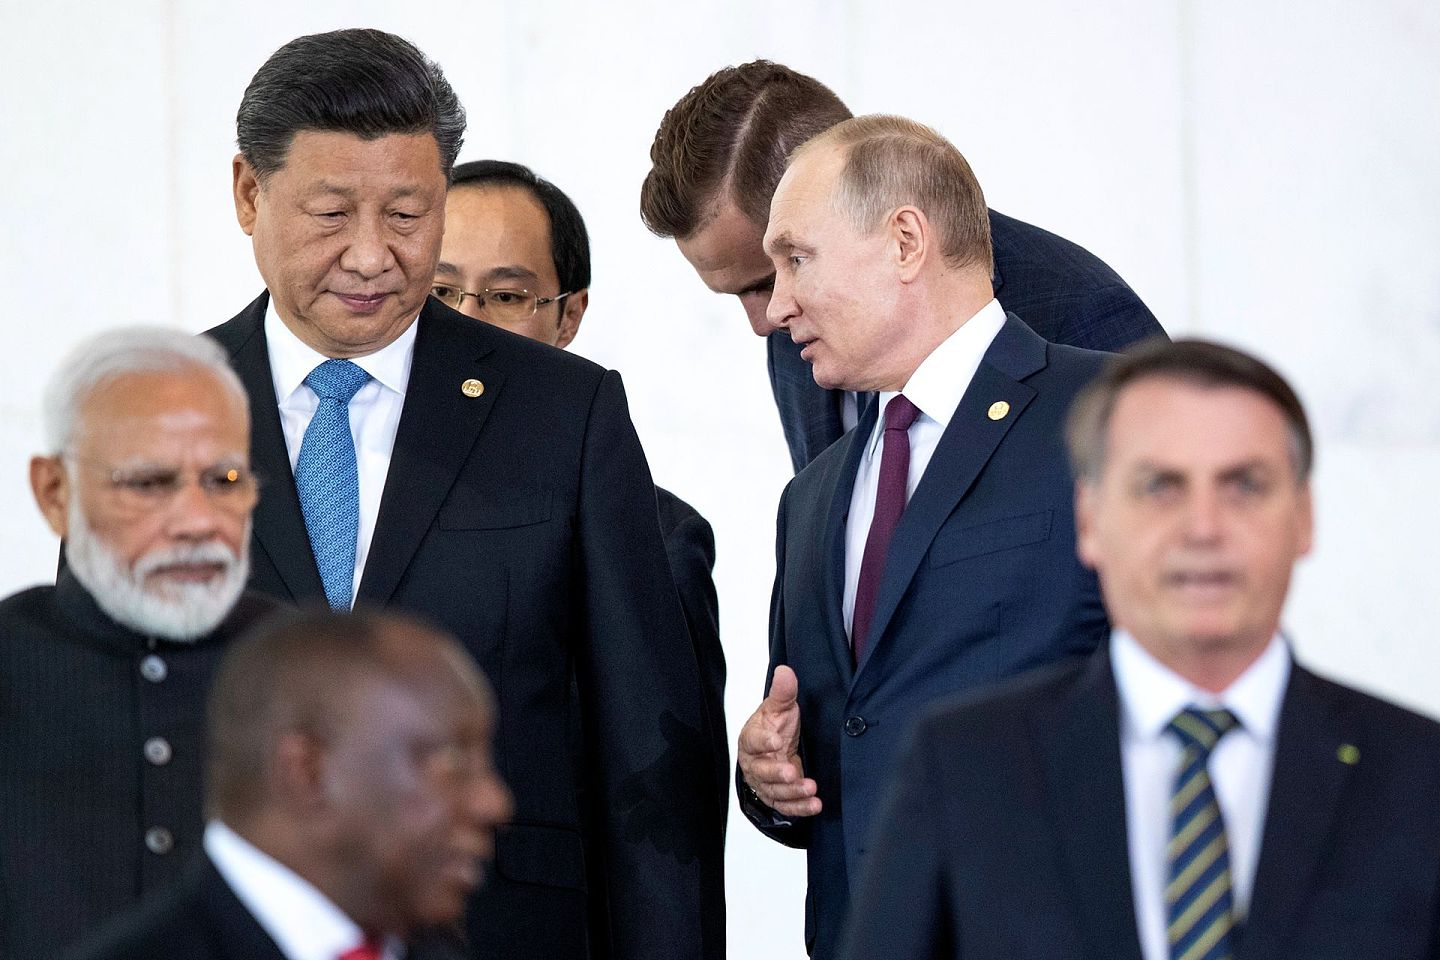 中俄关系近年明显升温。图为2019年11月14日俄罗斯总统普京(右一)和中国国家主席习近平(左一)在巴西首都巴西利亚出席金砖国家领导人峰会。 (AP Photo/Pavel Golovkin, Pool)